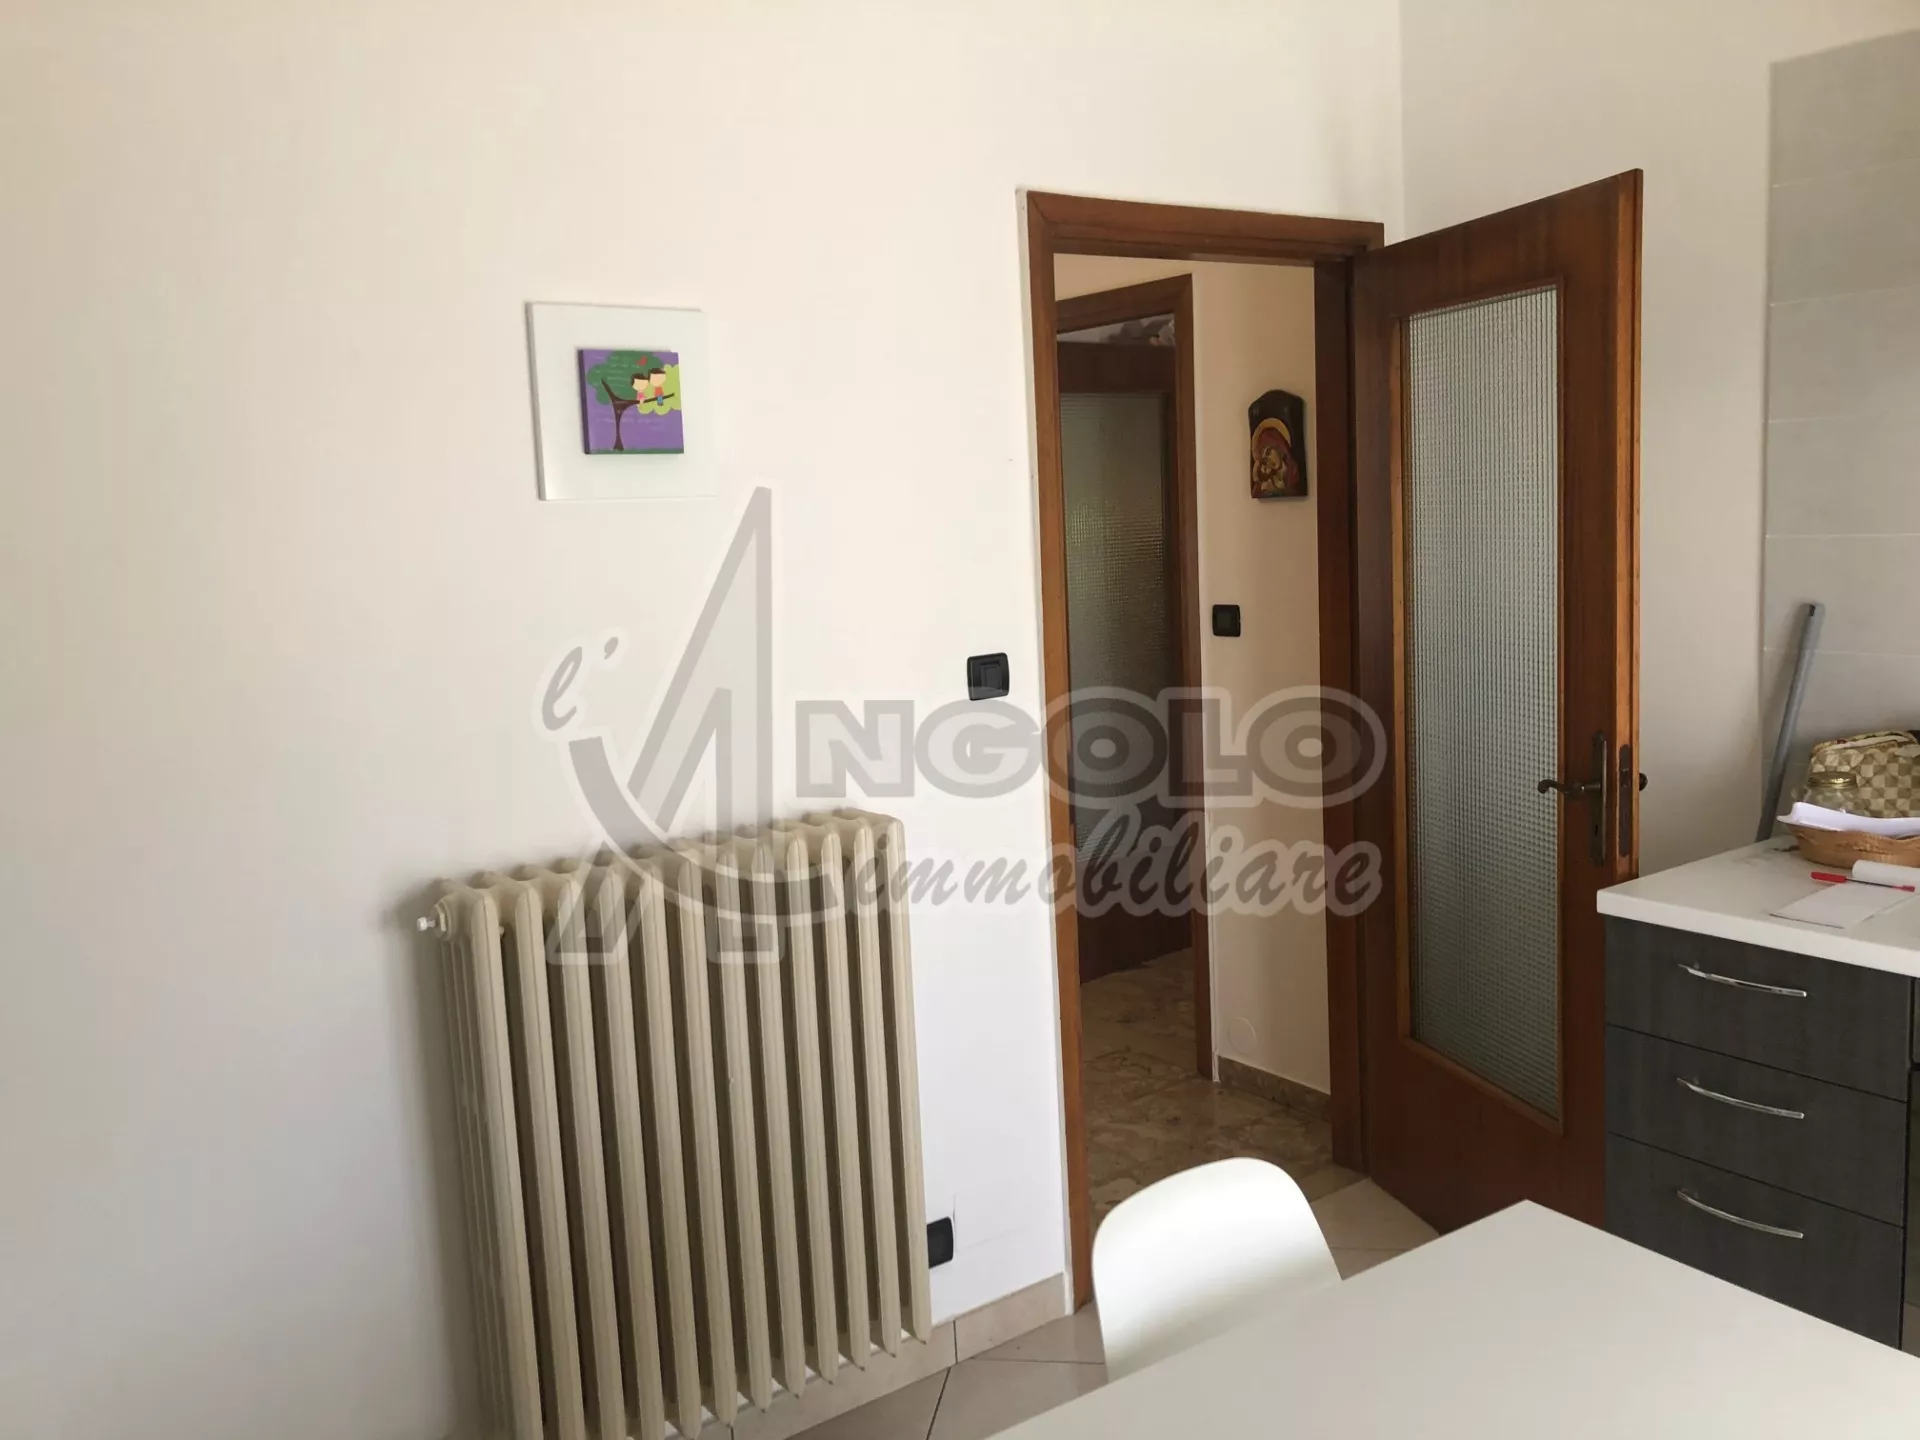 Immagine per Appartamento in vendita a Occhiobello via Trento 30